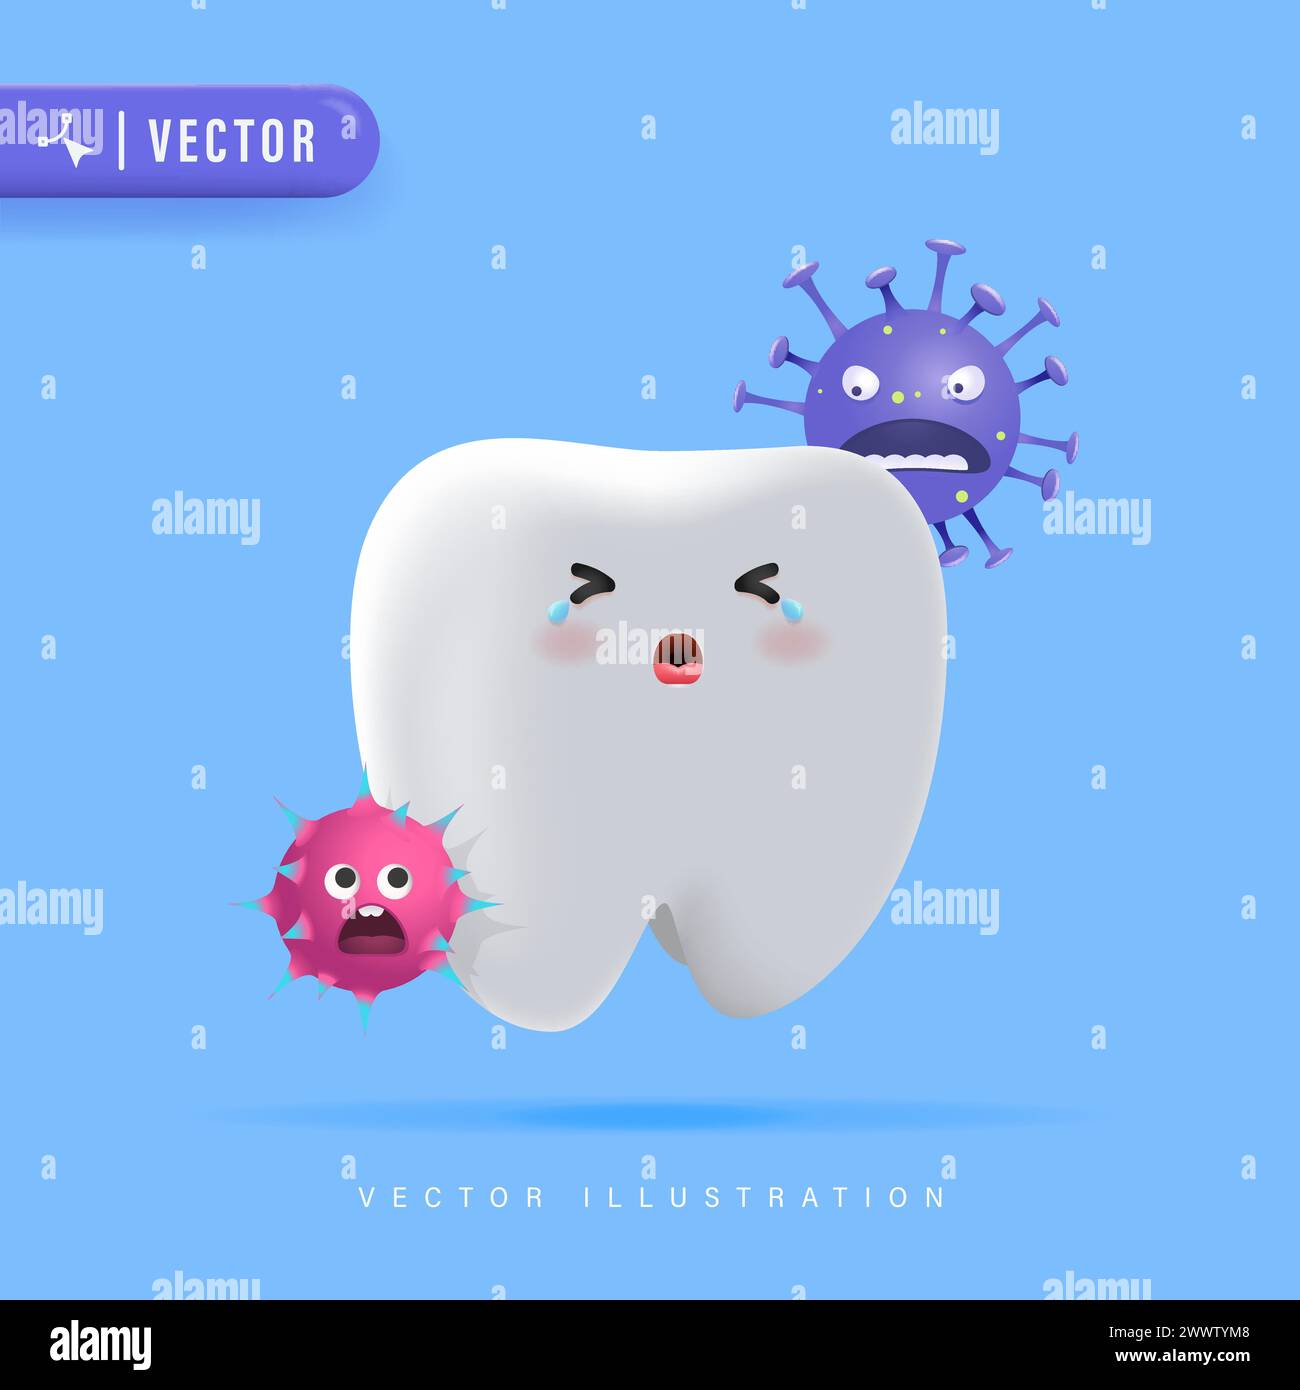 Le caractère dentaire pleure à cause des germes. Illustration vectorielle de carie dentaire pour la conception de modèle d'affiche de clinique dentaire d'enfants. Dents fissurées ou cassées Ill Illustration de Vecteur